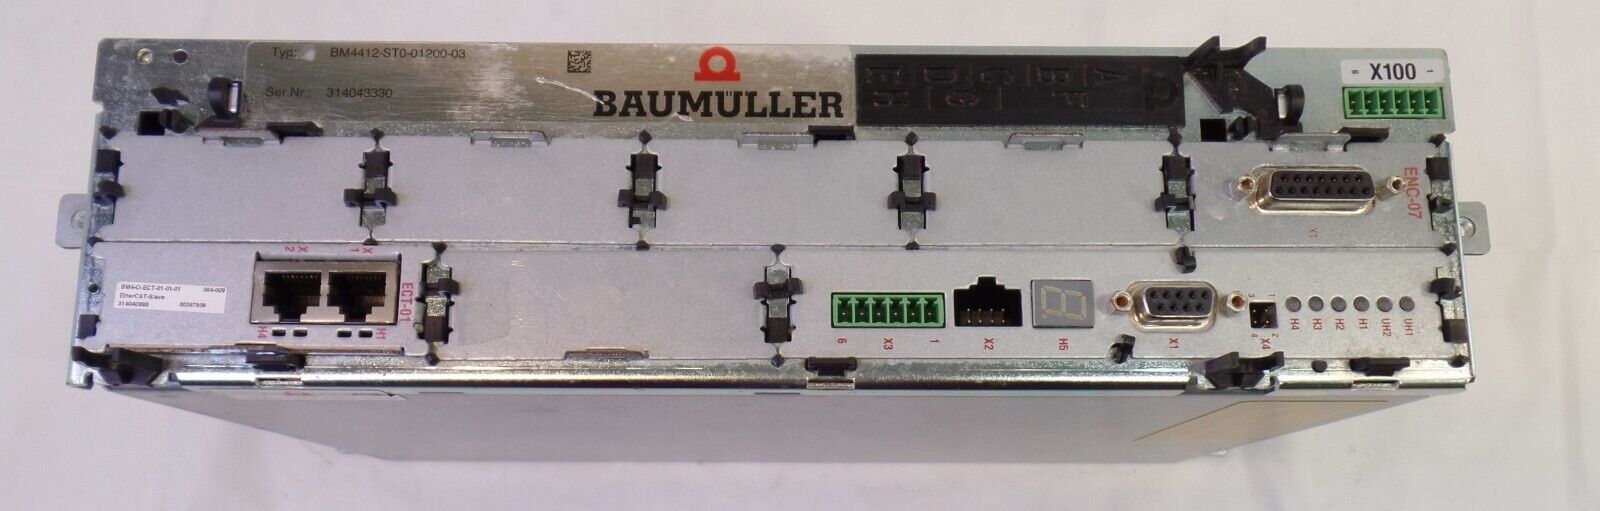 Baumuller Servo Drive BM4412-ST0-01200-03, For Parts/ Repair